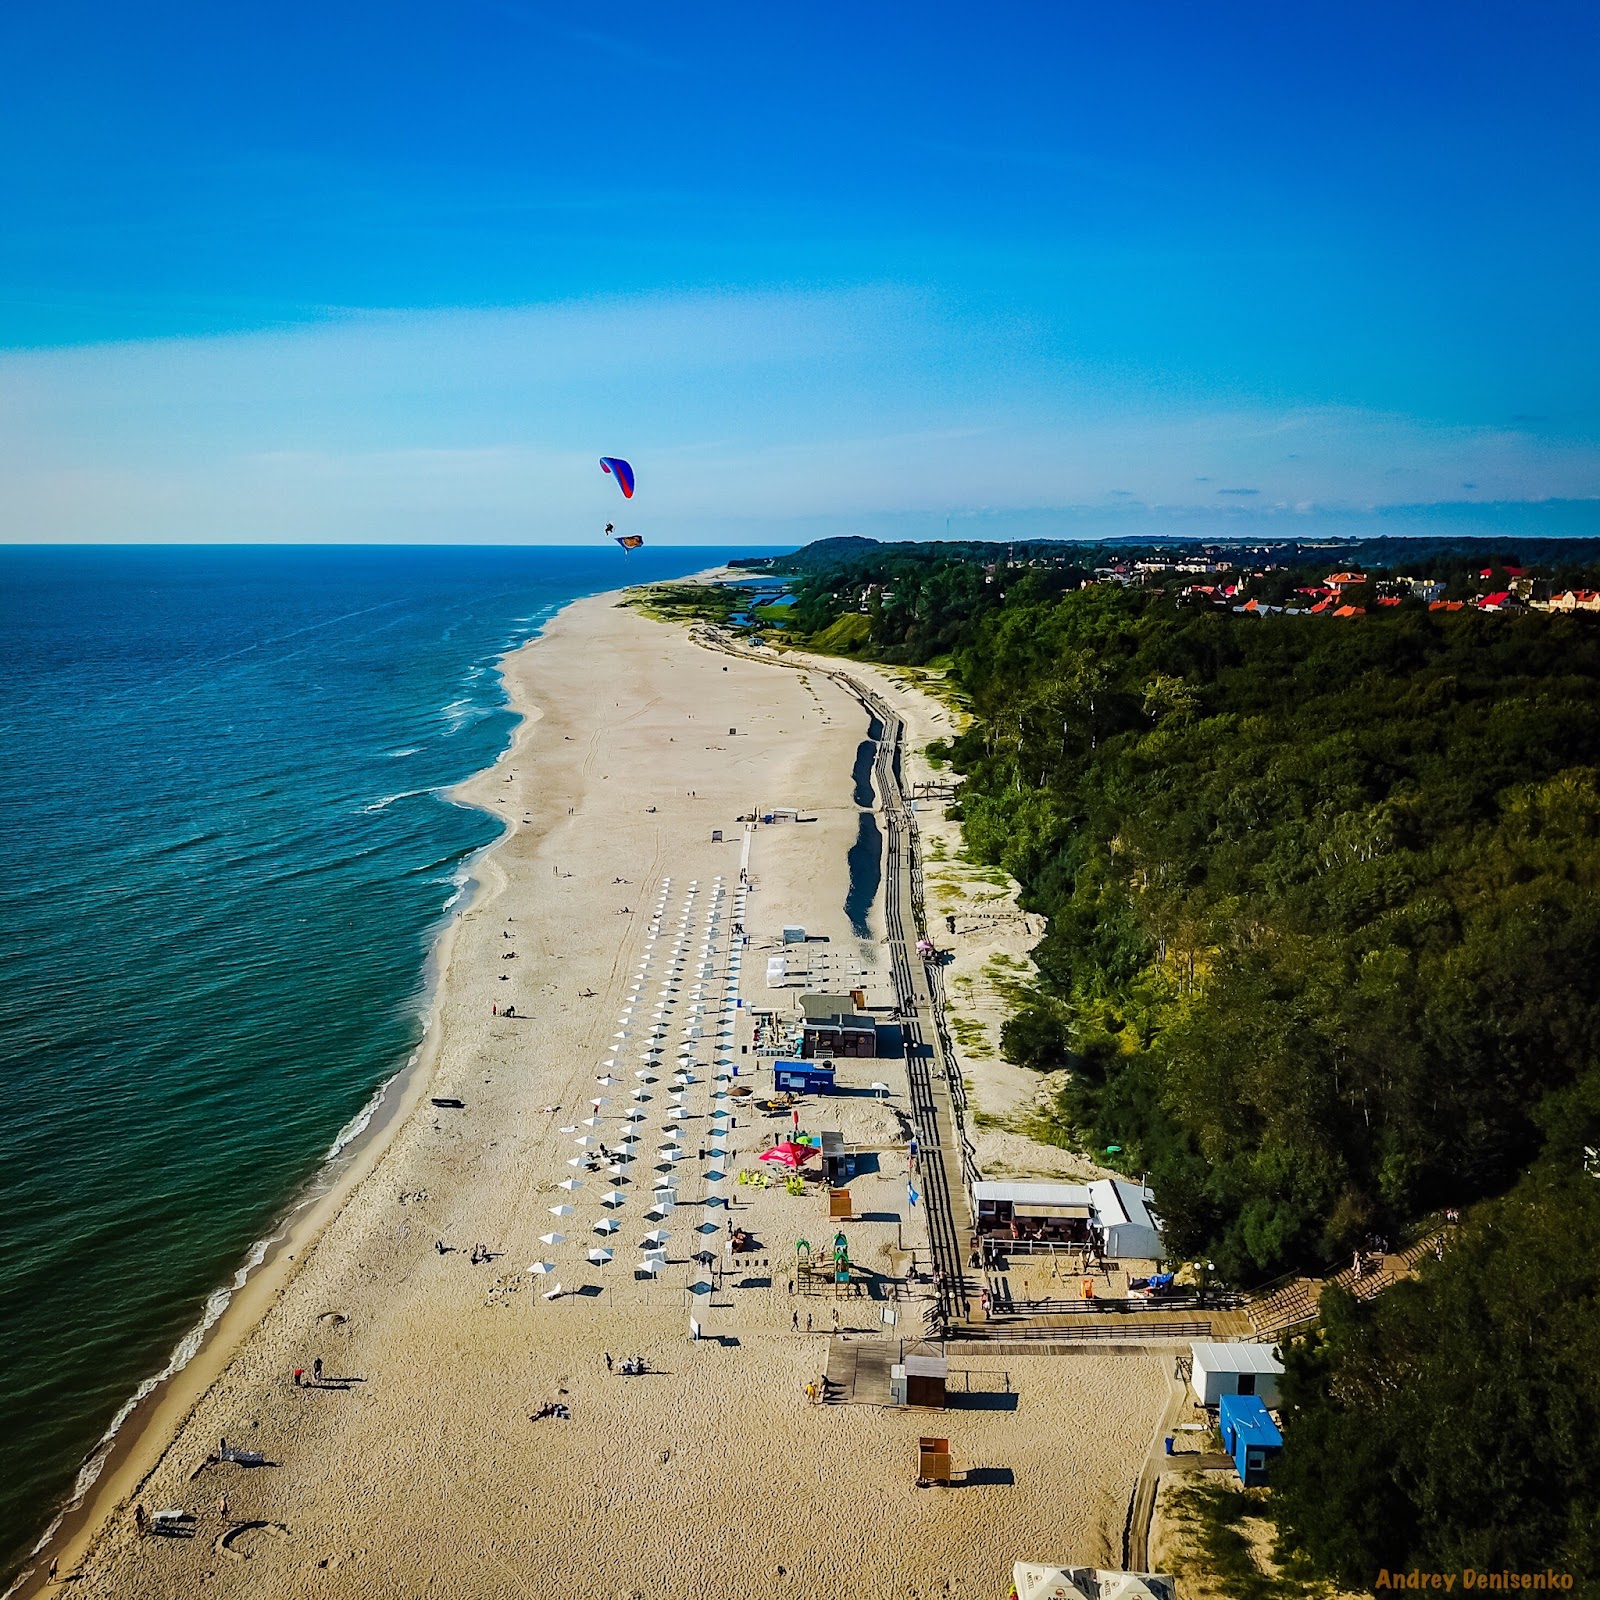 Fotografie cu Yantarnyy Plaj - locul popular printre cunoscătorii de relaxare